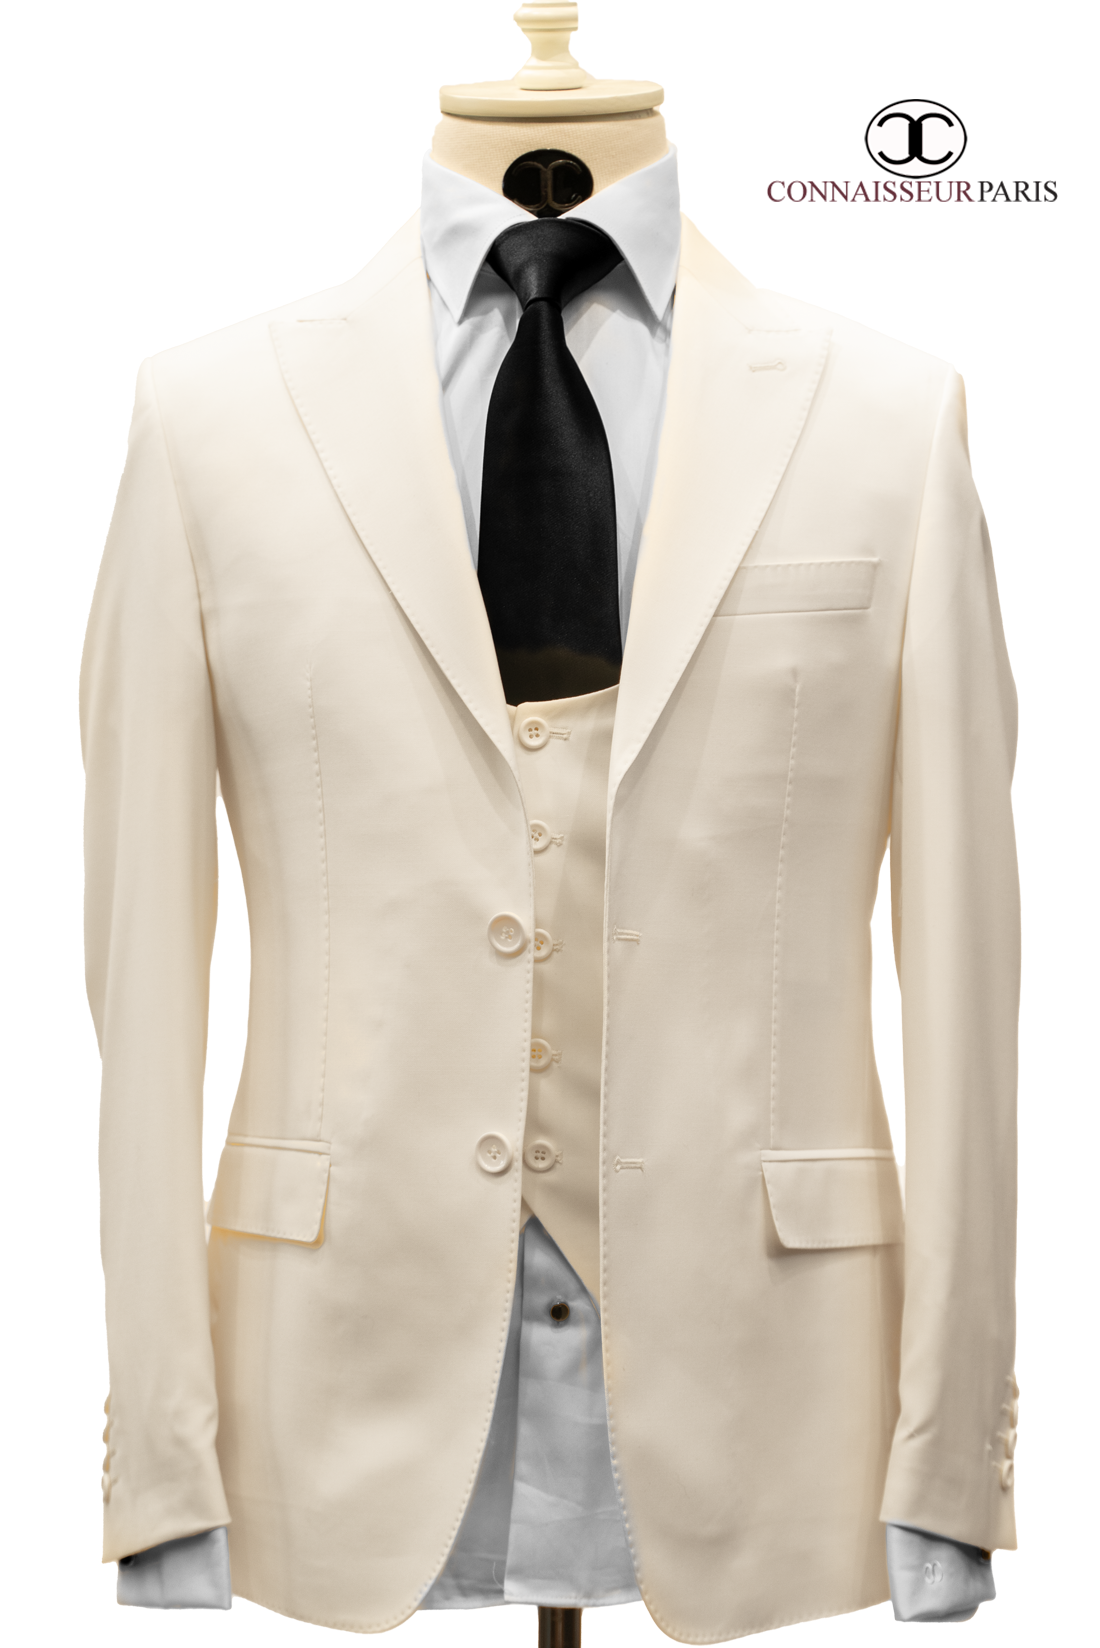 Connaisseur - Cream White 3-Piece Slim Fit Suit